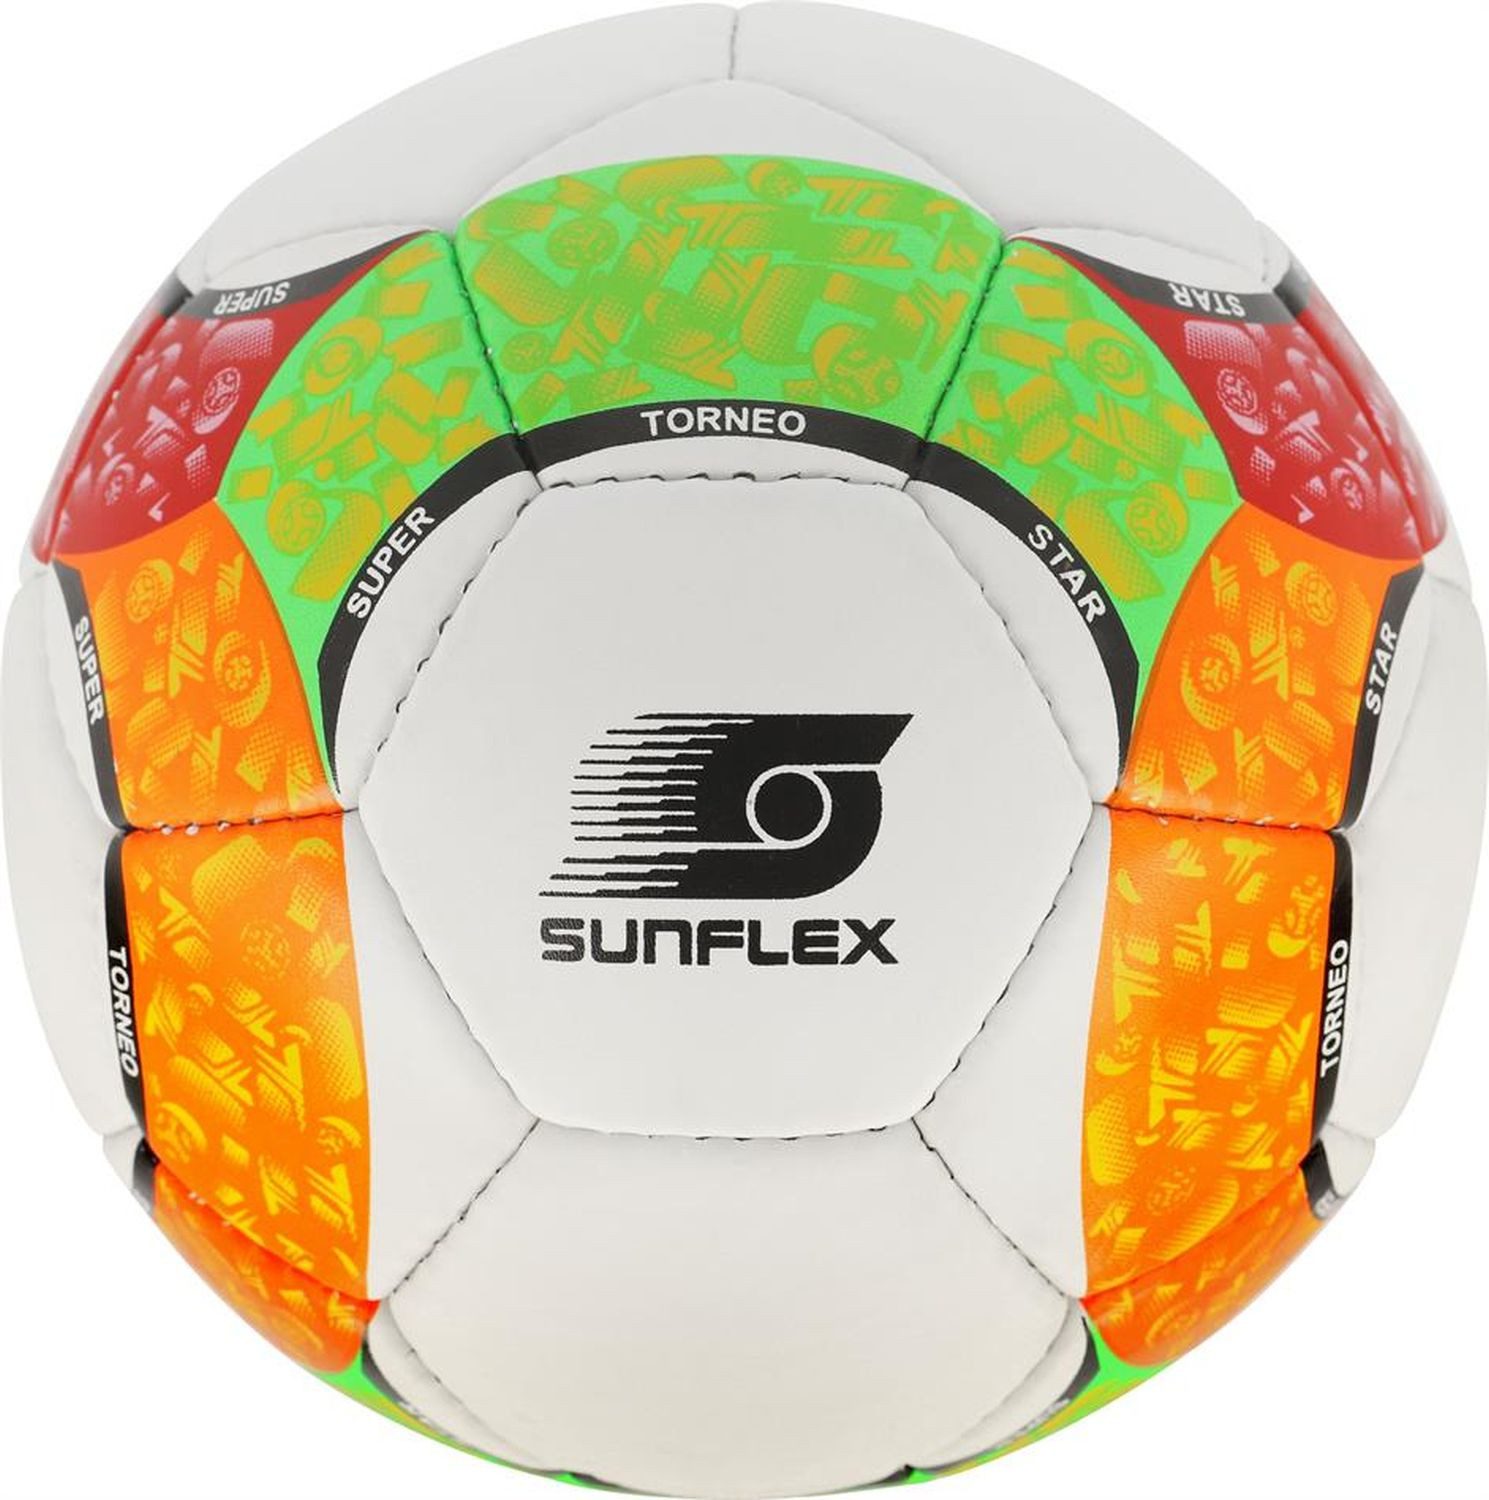 Sunflex Fußball Fußball Paint, Ball Ballsport Ballspiel Sportspiel Sportball Soccer